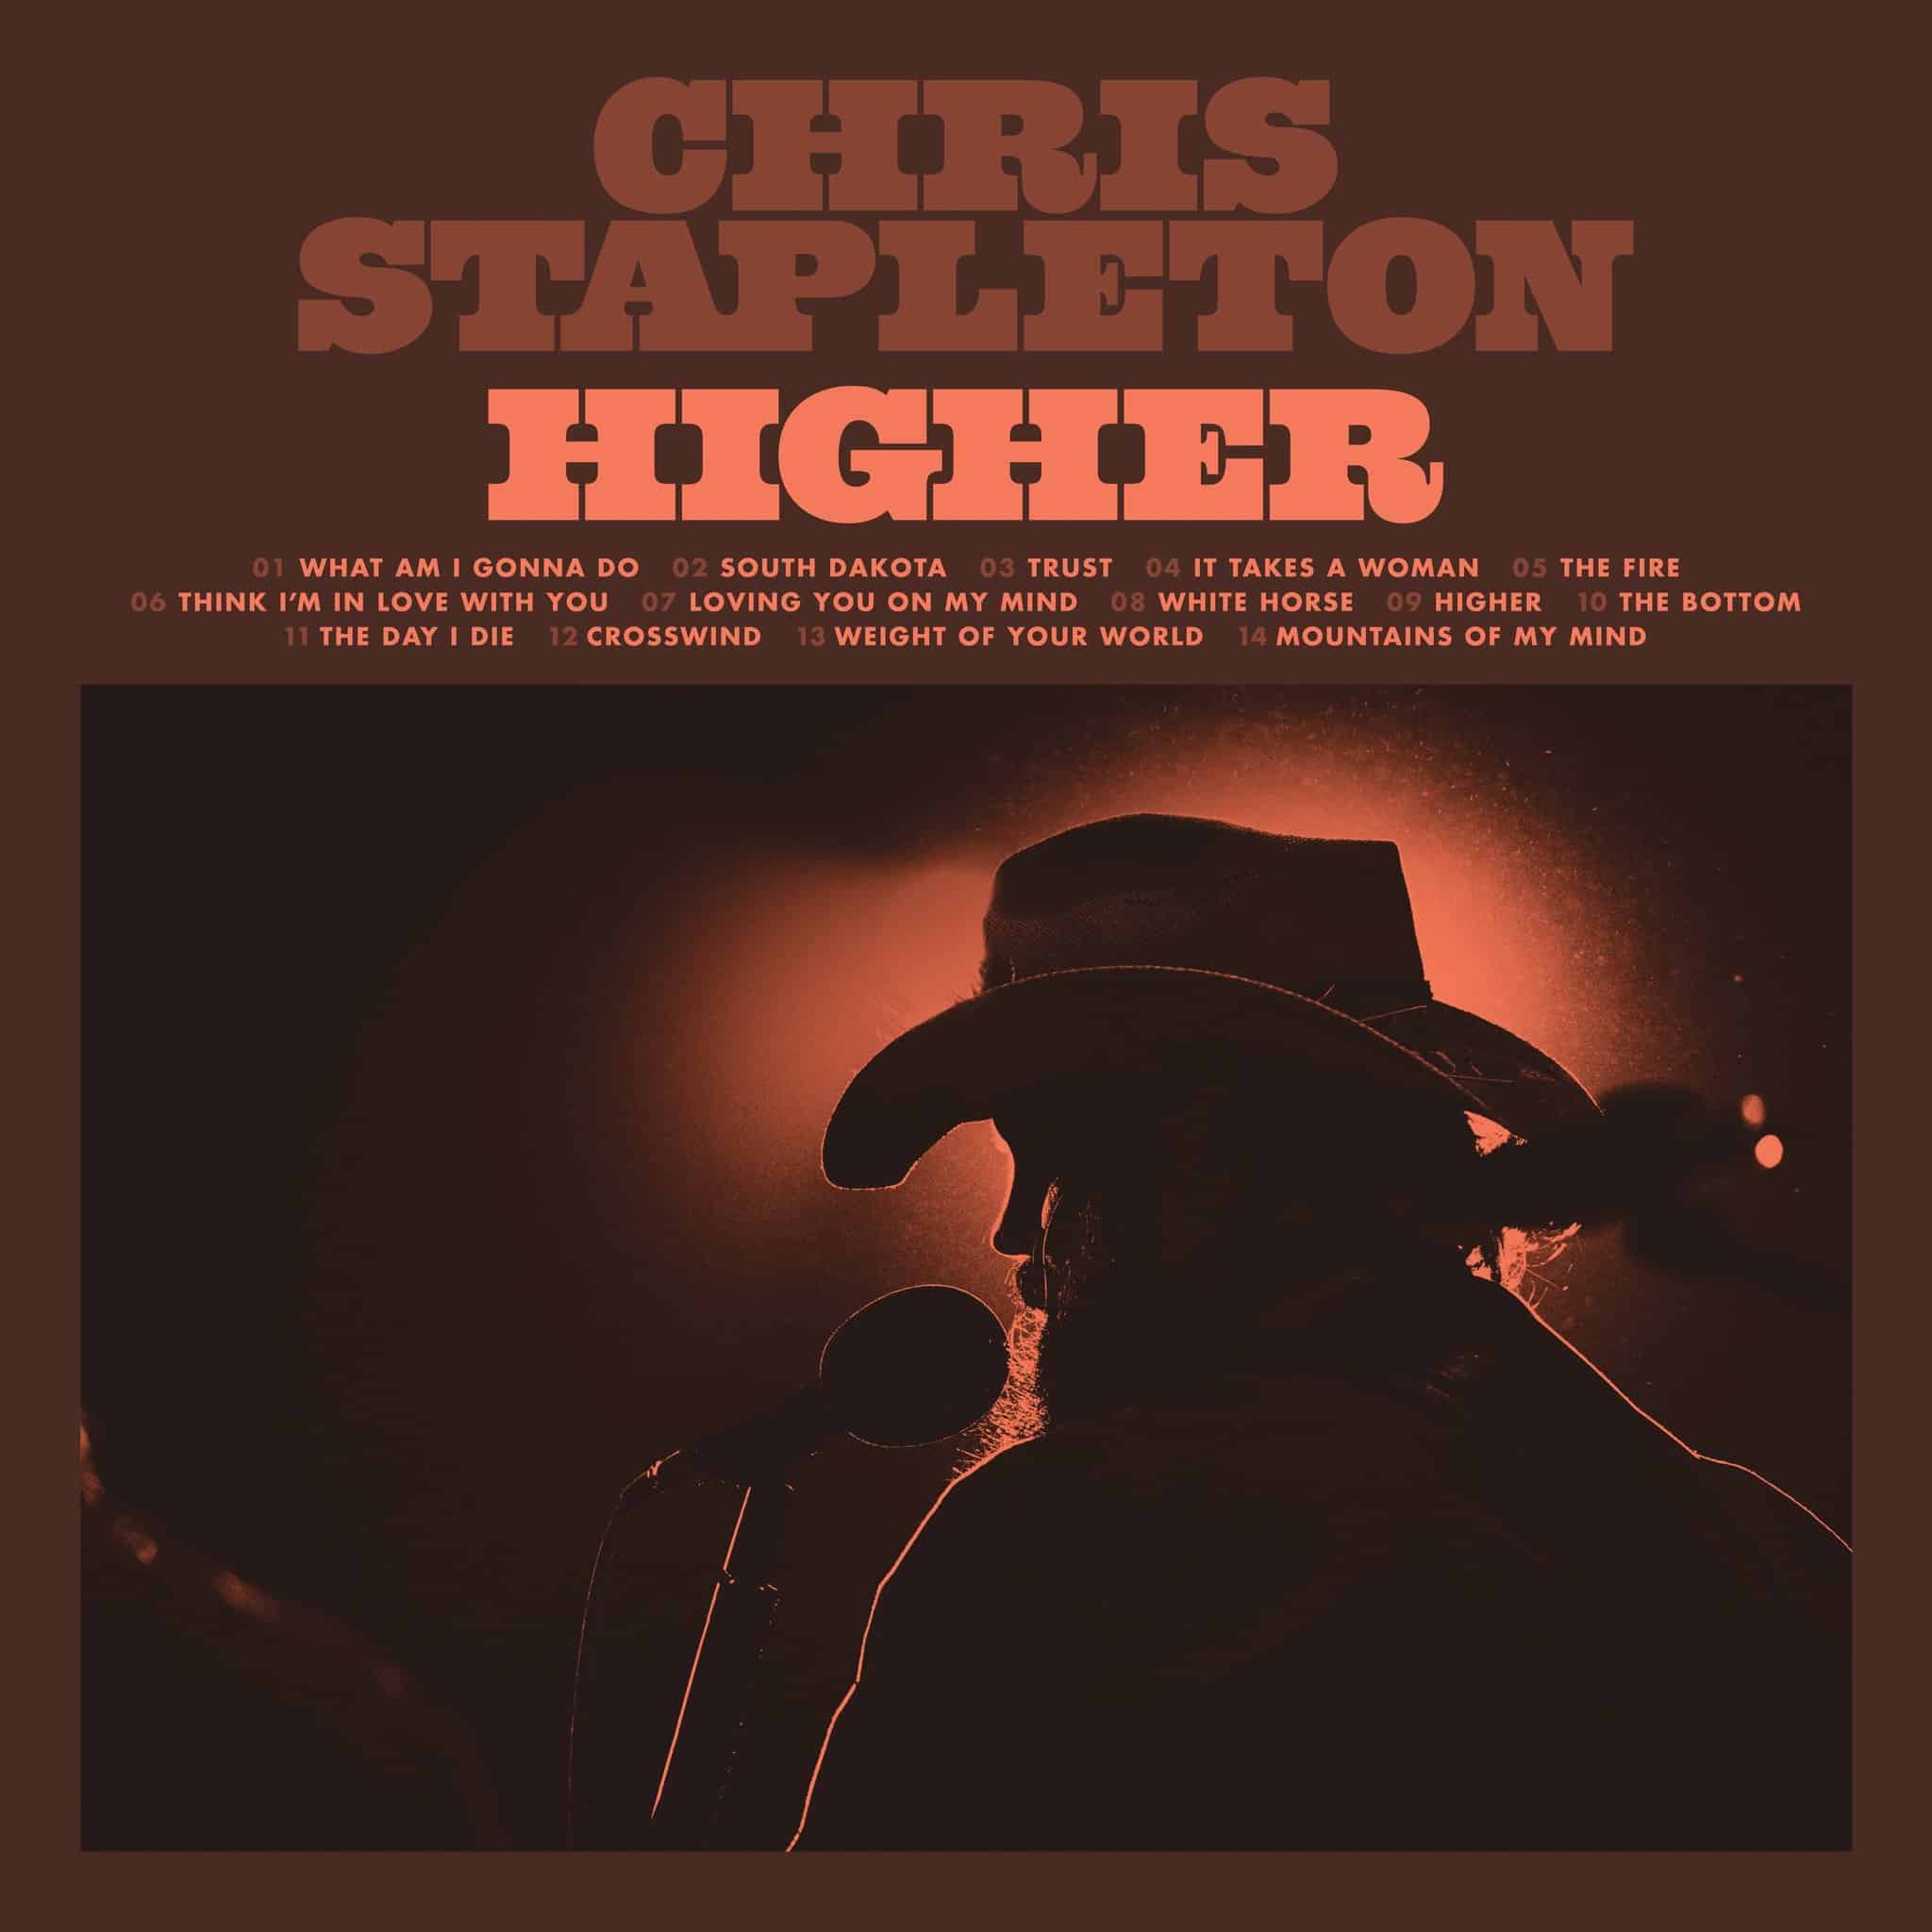 Cover Art for the Chris Stapleton album "Higher"